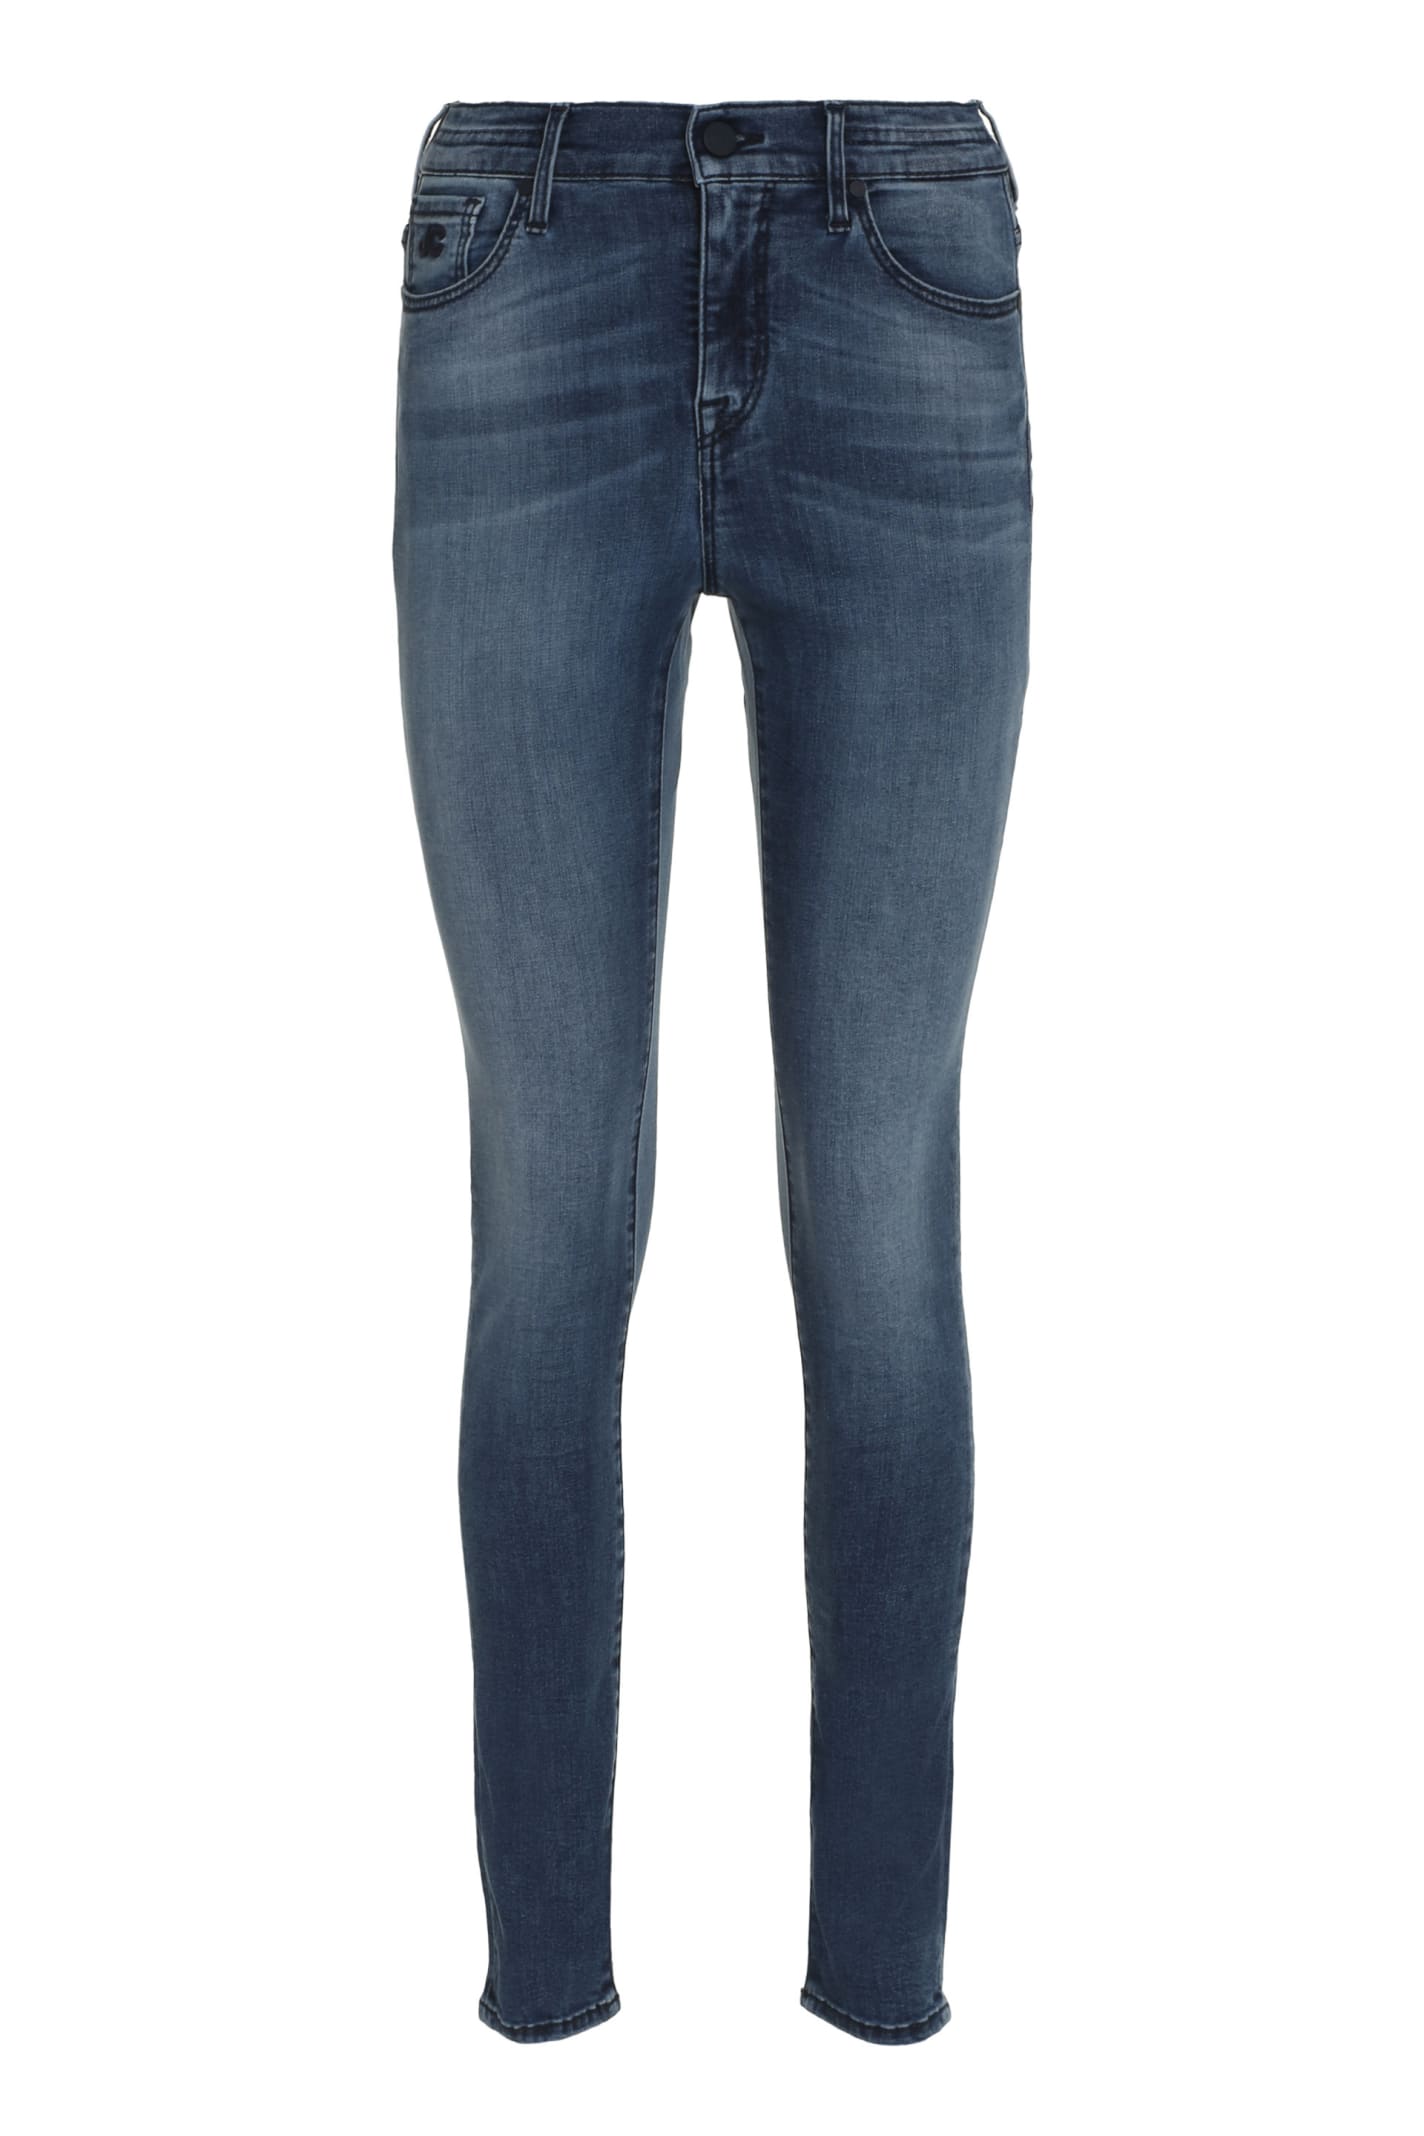 Jacob Cohen 5-pocket Jeans